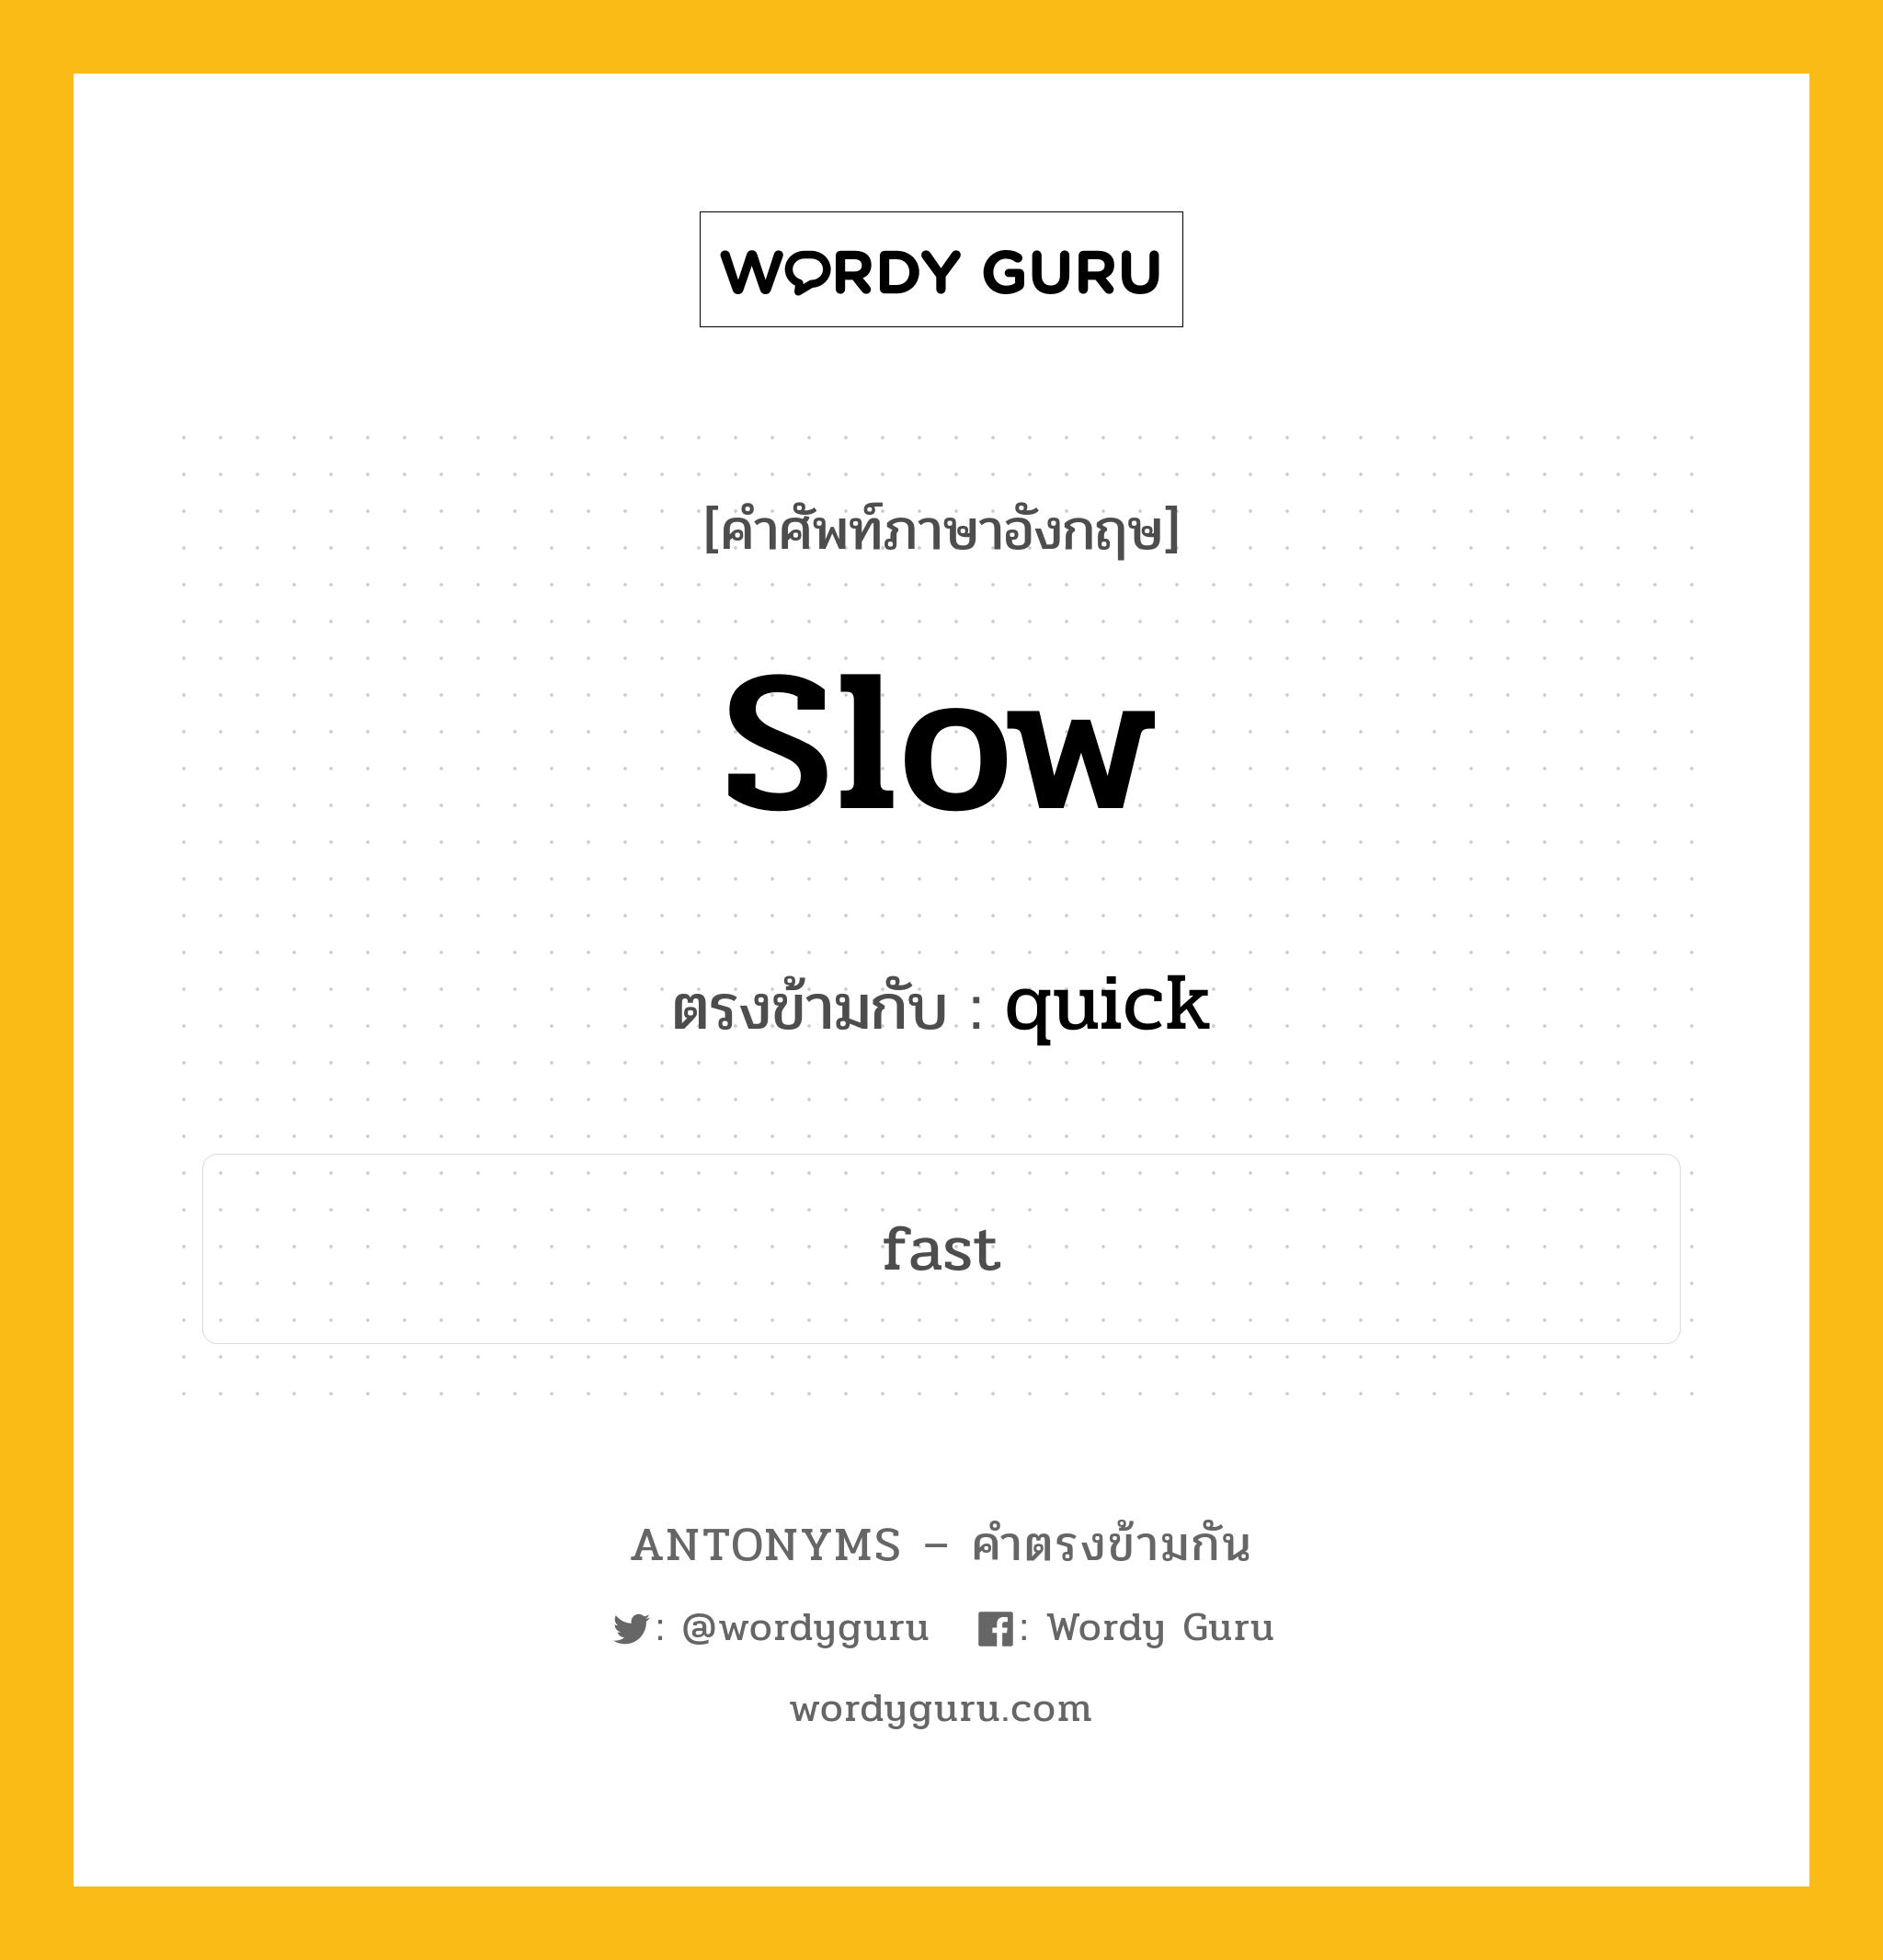 slow เป็นคำตรงข้ามกับคำไหนบ้าง?, คำศัพท์ภาษาอังกฤษ slow ตรงข้ามกับ quick หมวด quick